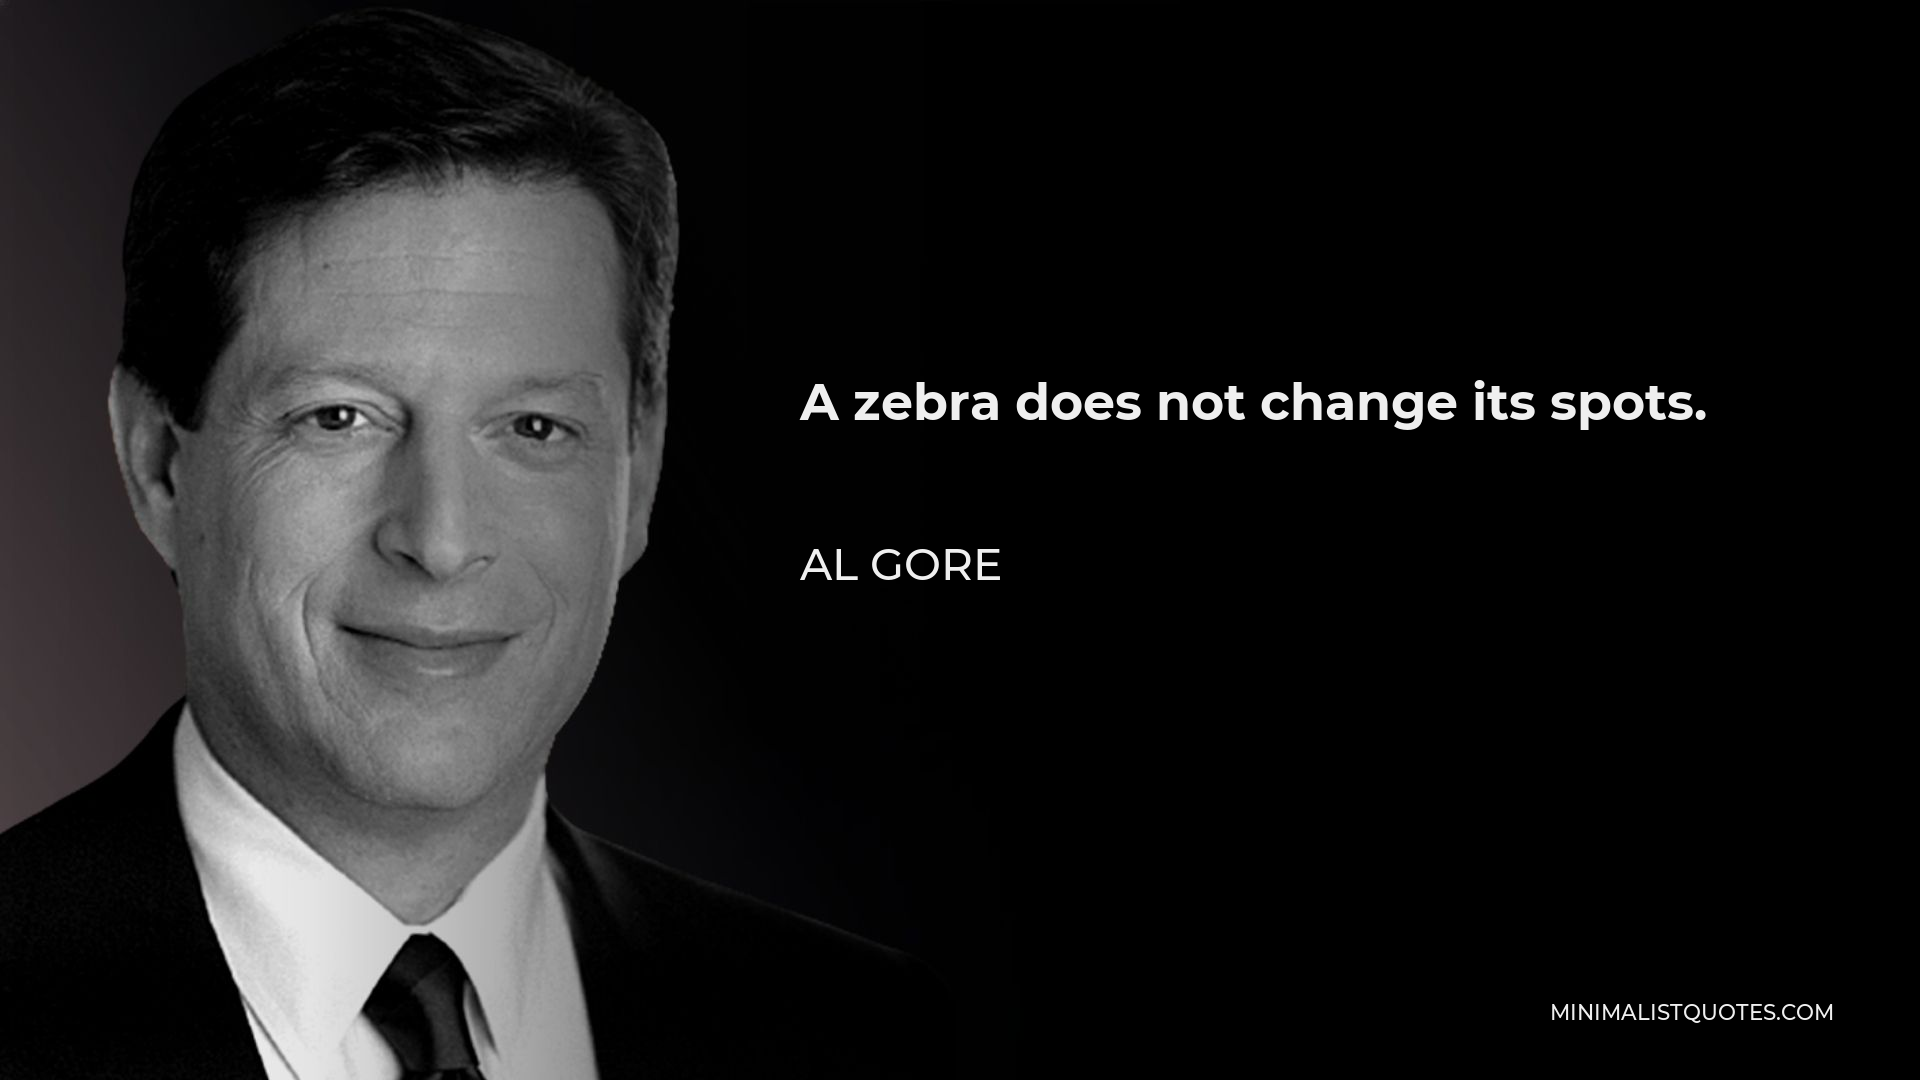 Al Gore Quote - A zebra does not change its spots.